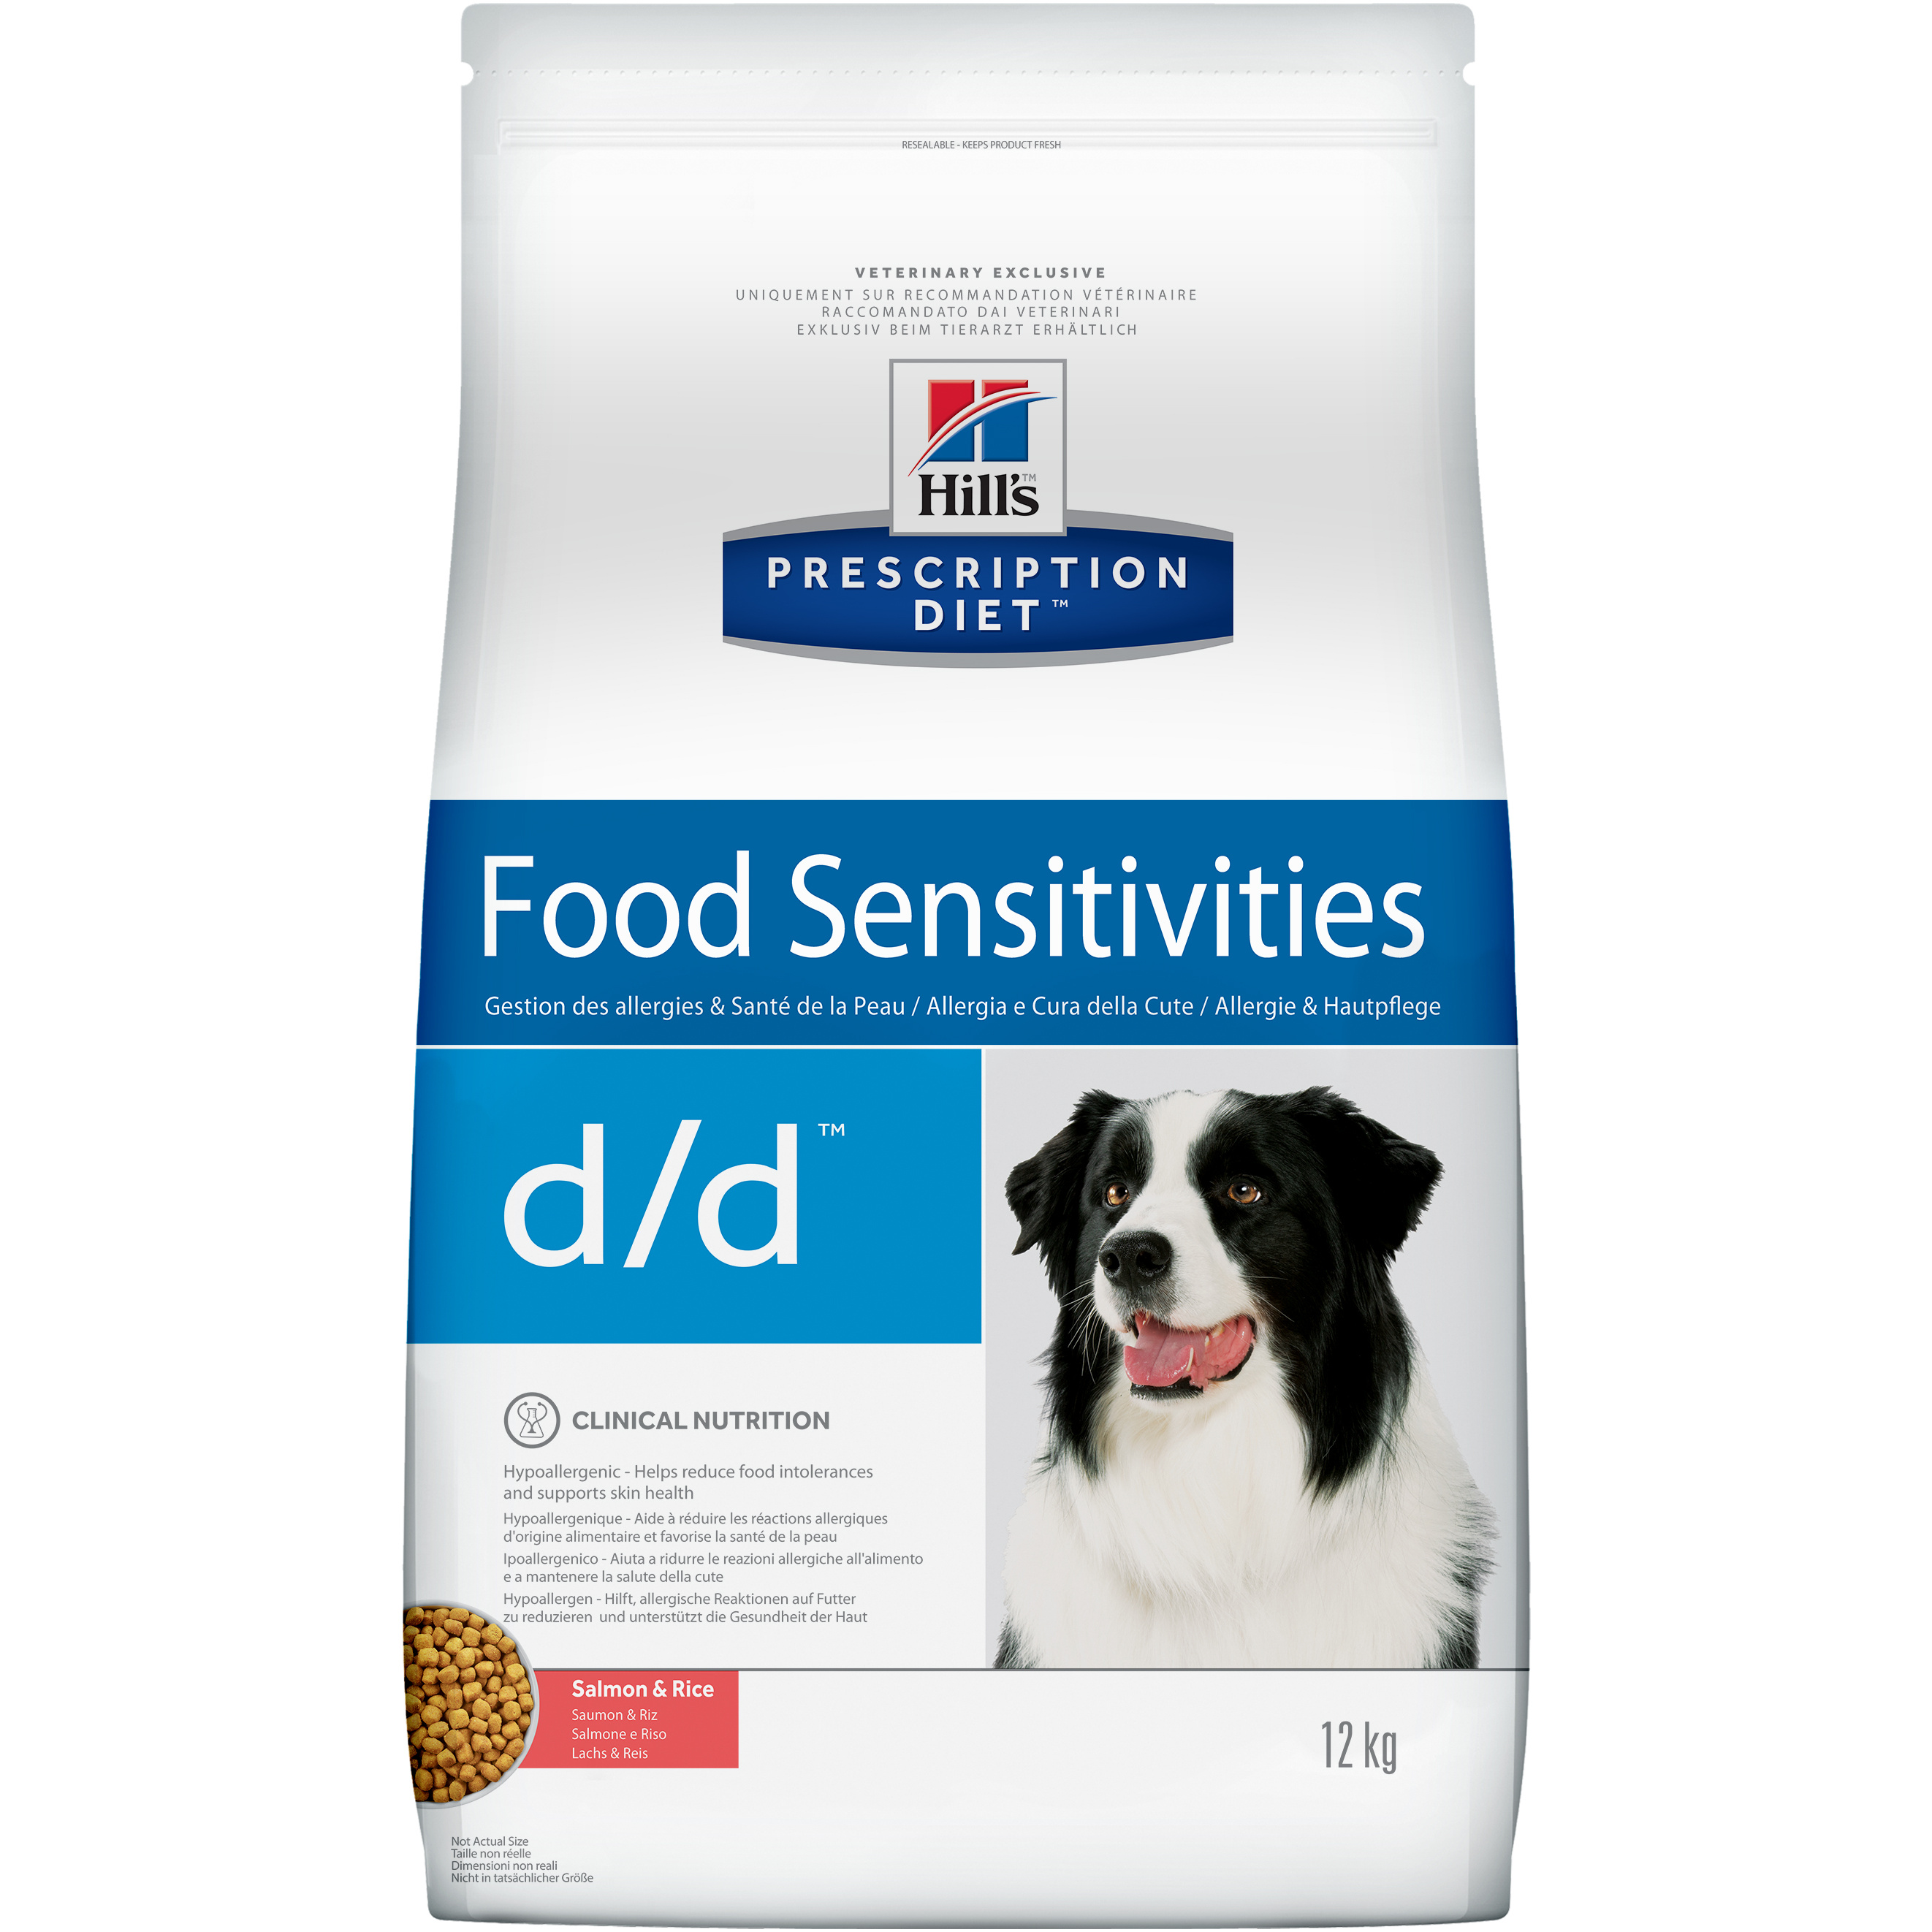 фото Сухой корм для собак hill's prescription diet d/d food sensitivities, лосось, 12кг